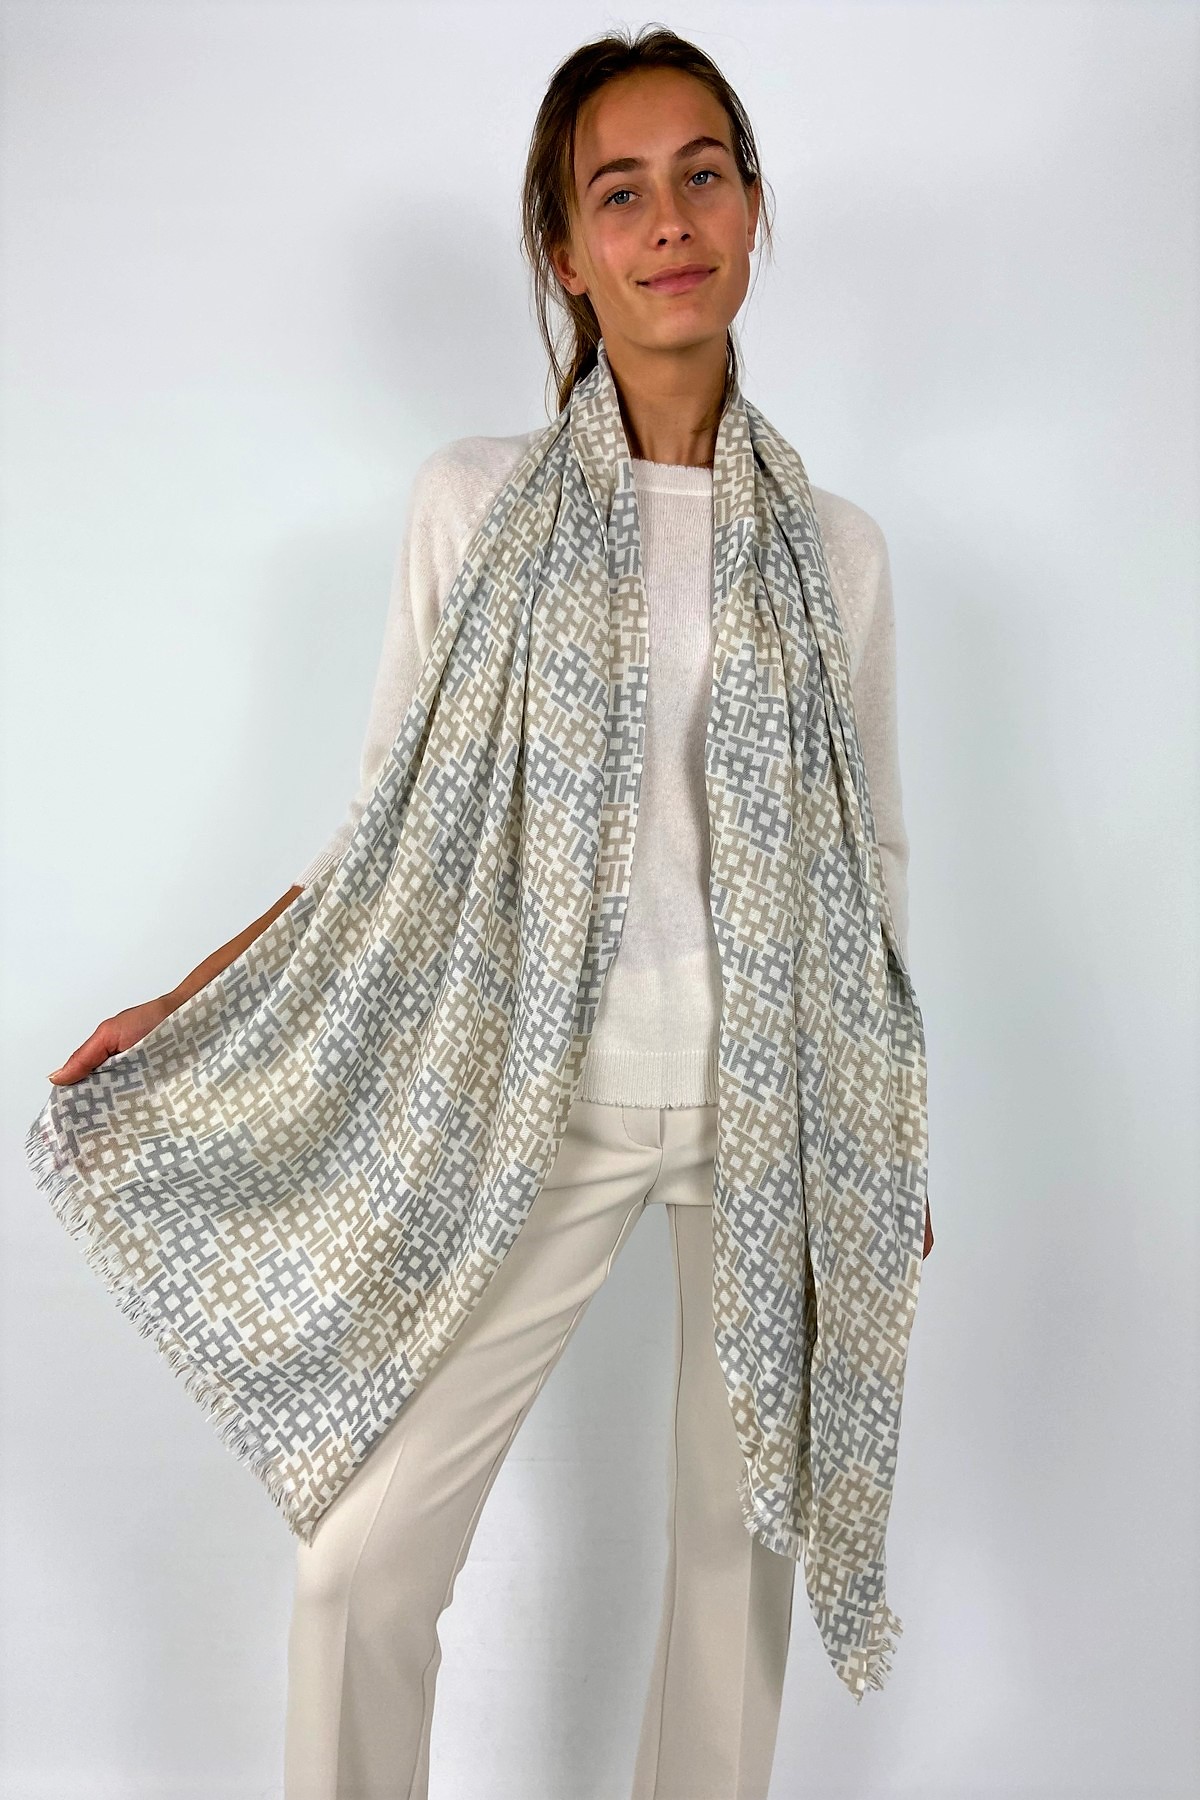 Sjaal H cashmere in de kleur ecru beige van het merk Hemisphere